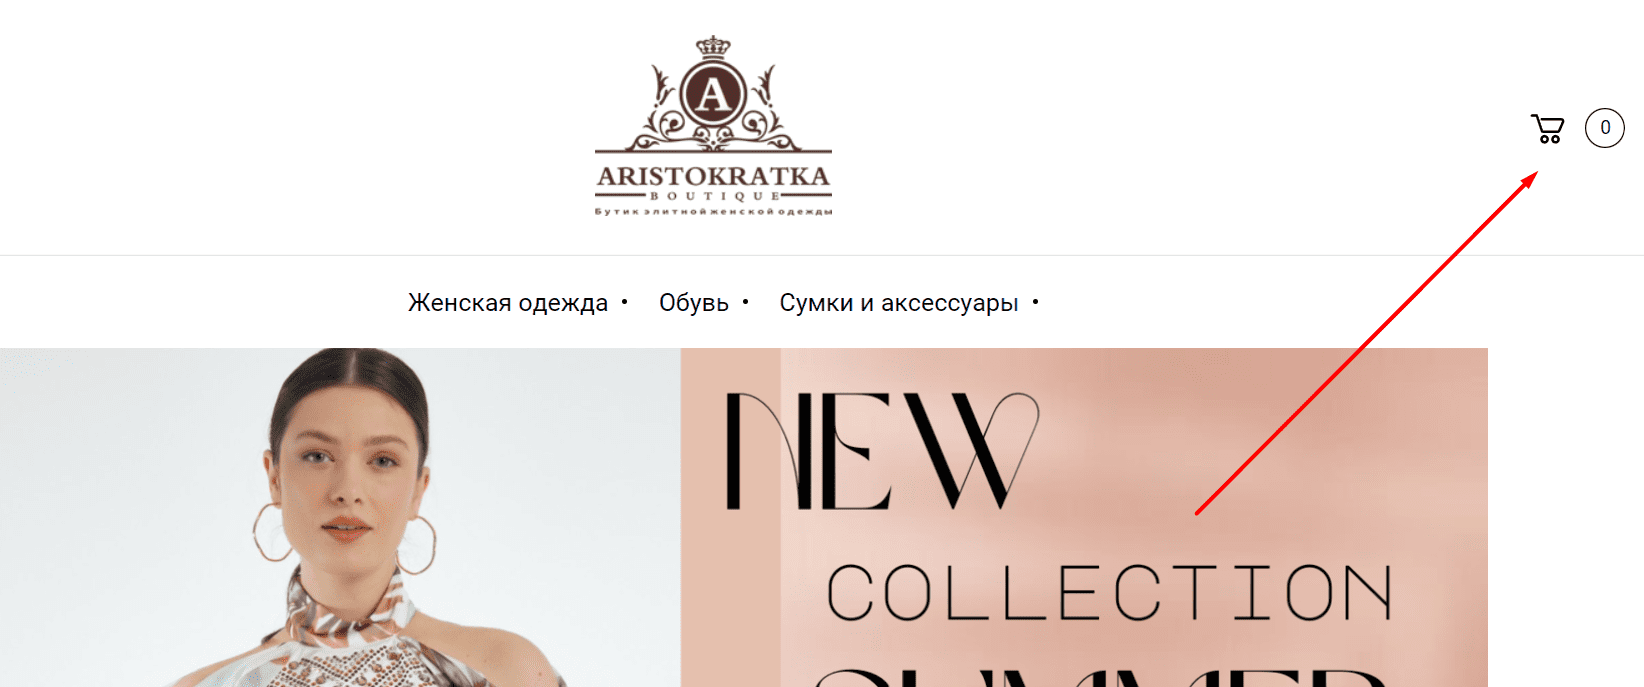 Аристократка (aristokratka.uz) - официальный сайт